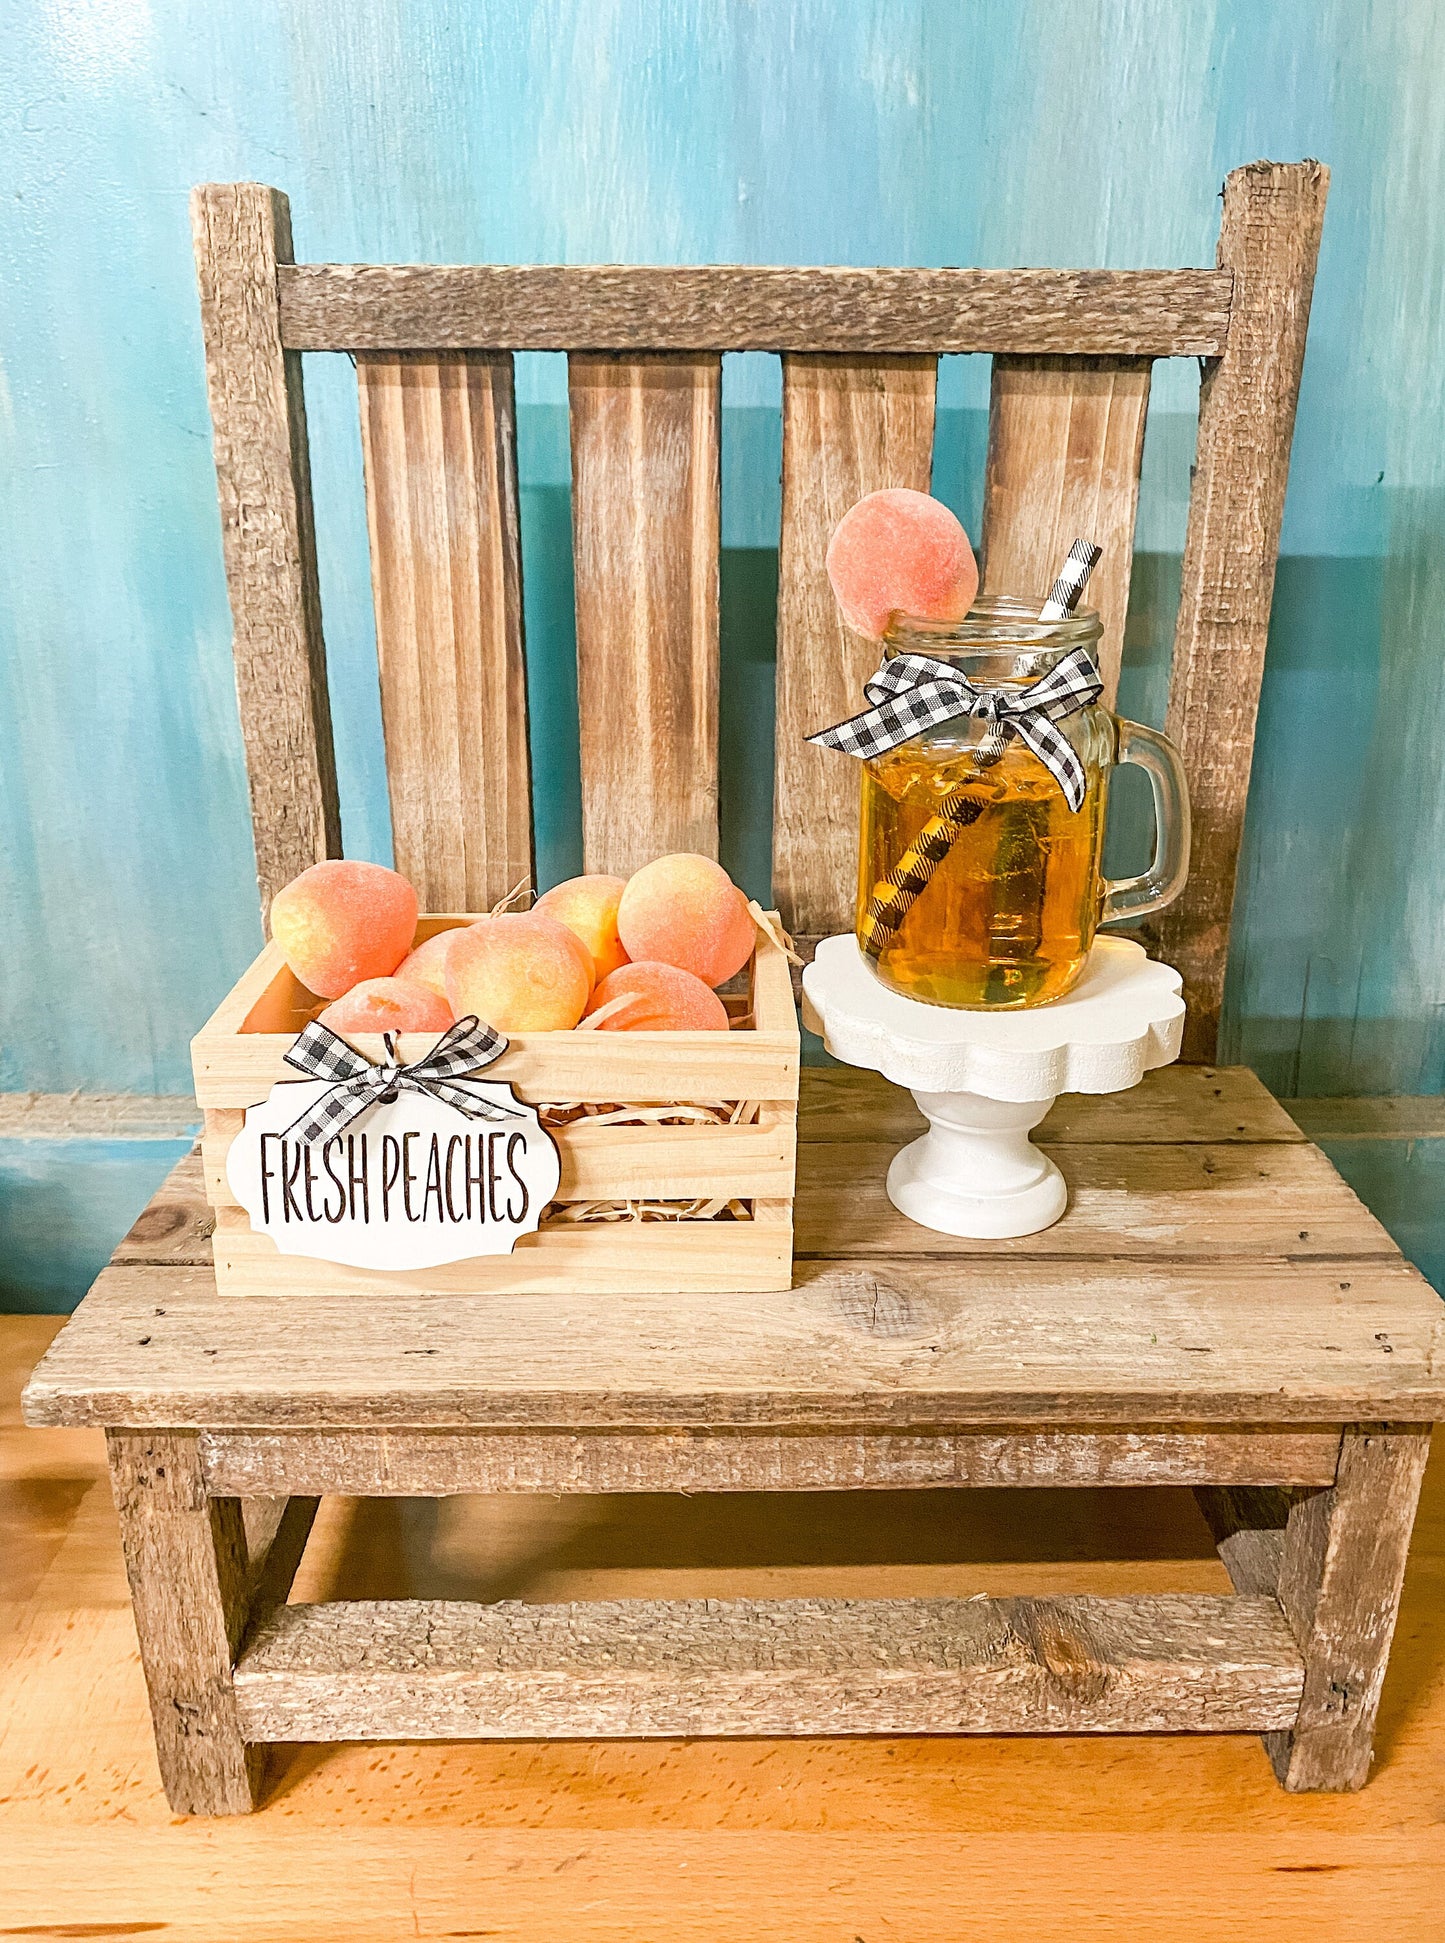 Faux Peach Drink | Fake Peach Jar |Faux Peach | Peach Tiered Tray Decor| Fake Summer Drink| Peach Decor| Summer Decor| Rae Dunn Inspired